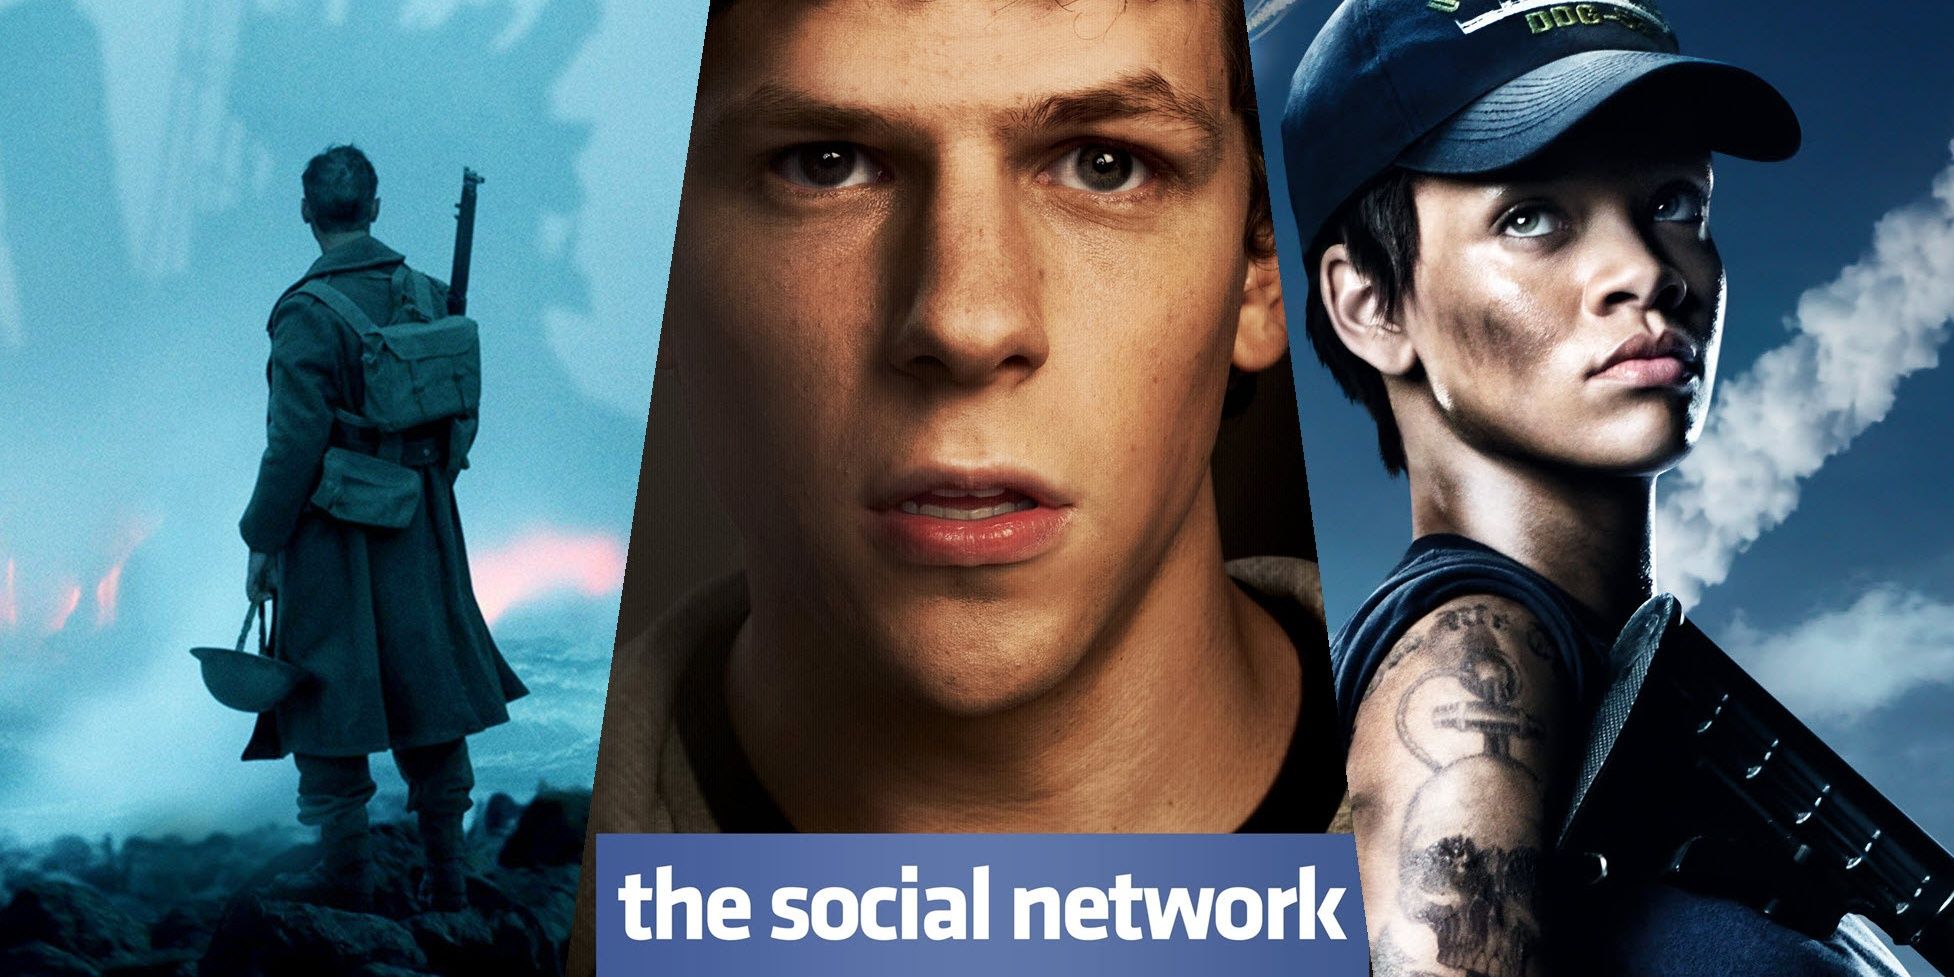 the social network full movie megashare9